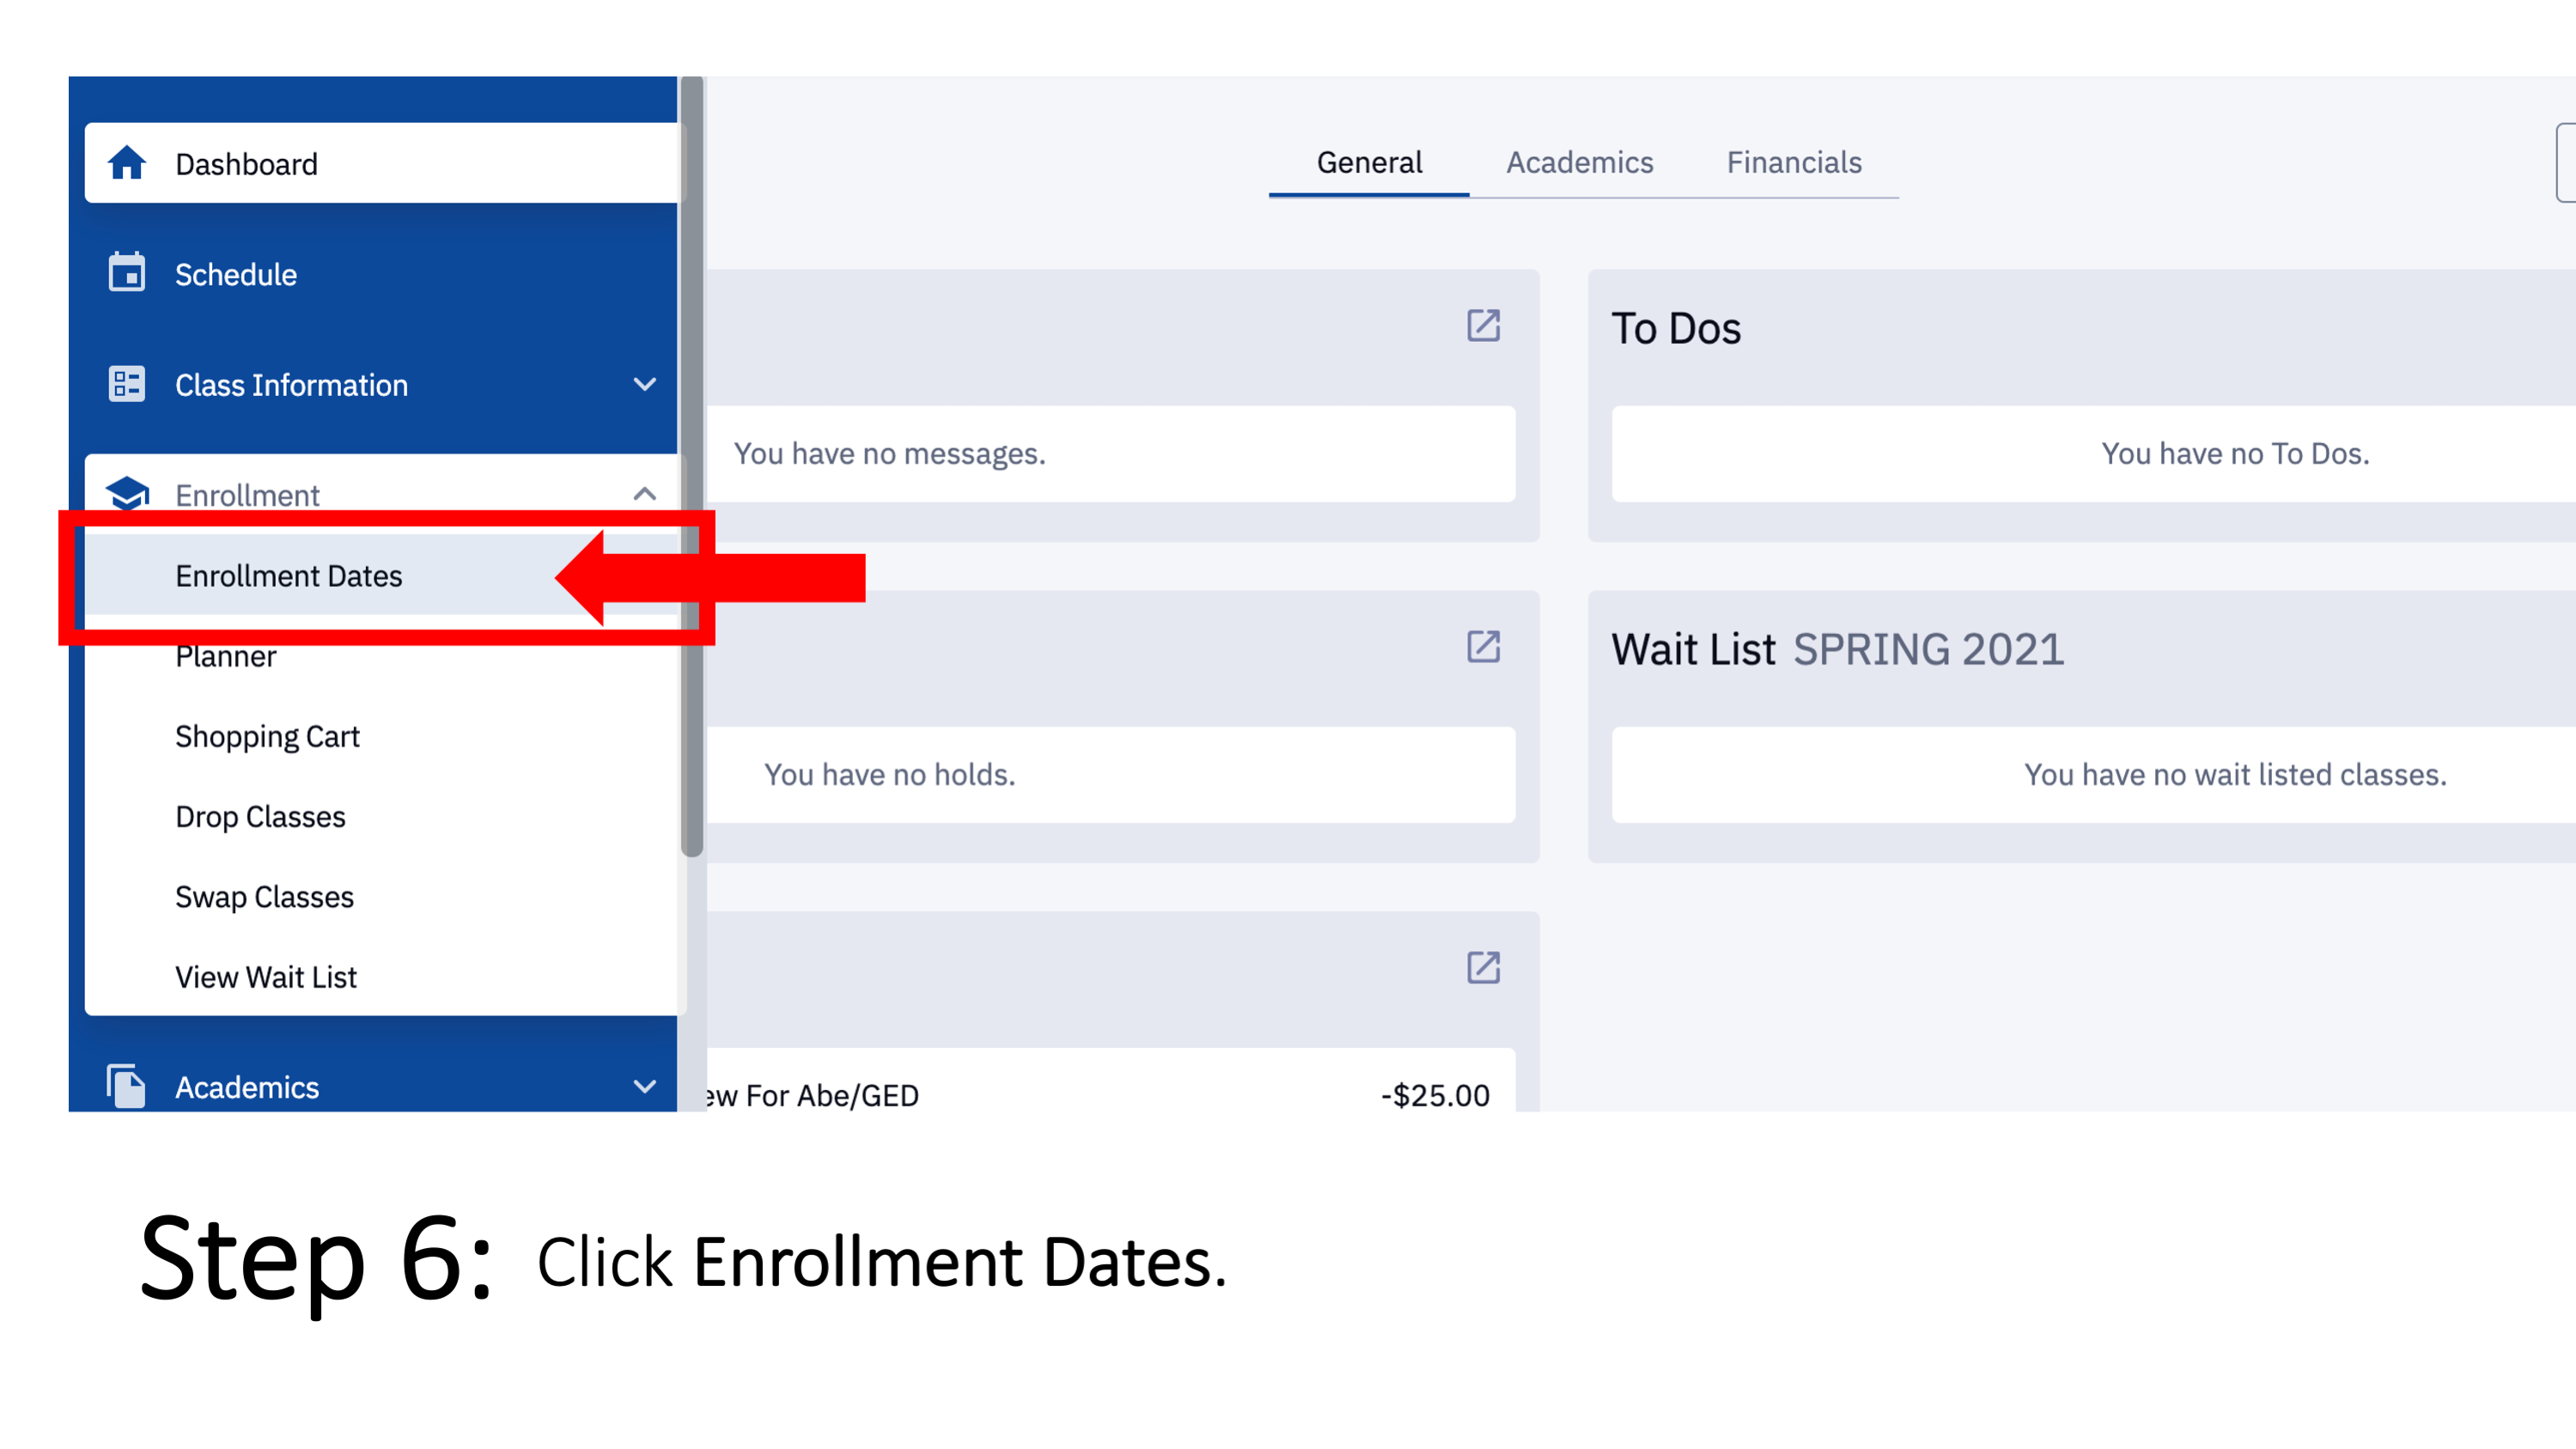 Step 6: Click Enrollment Dates.